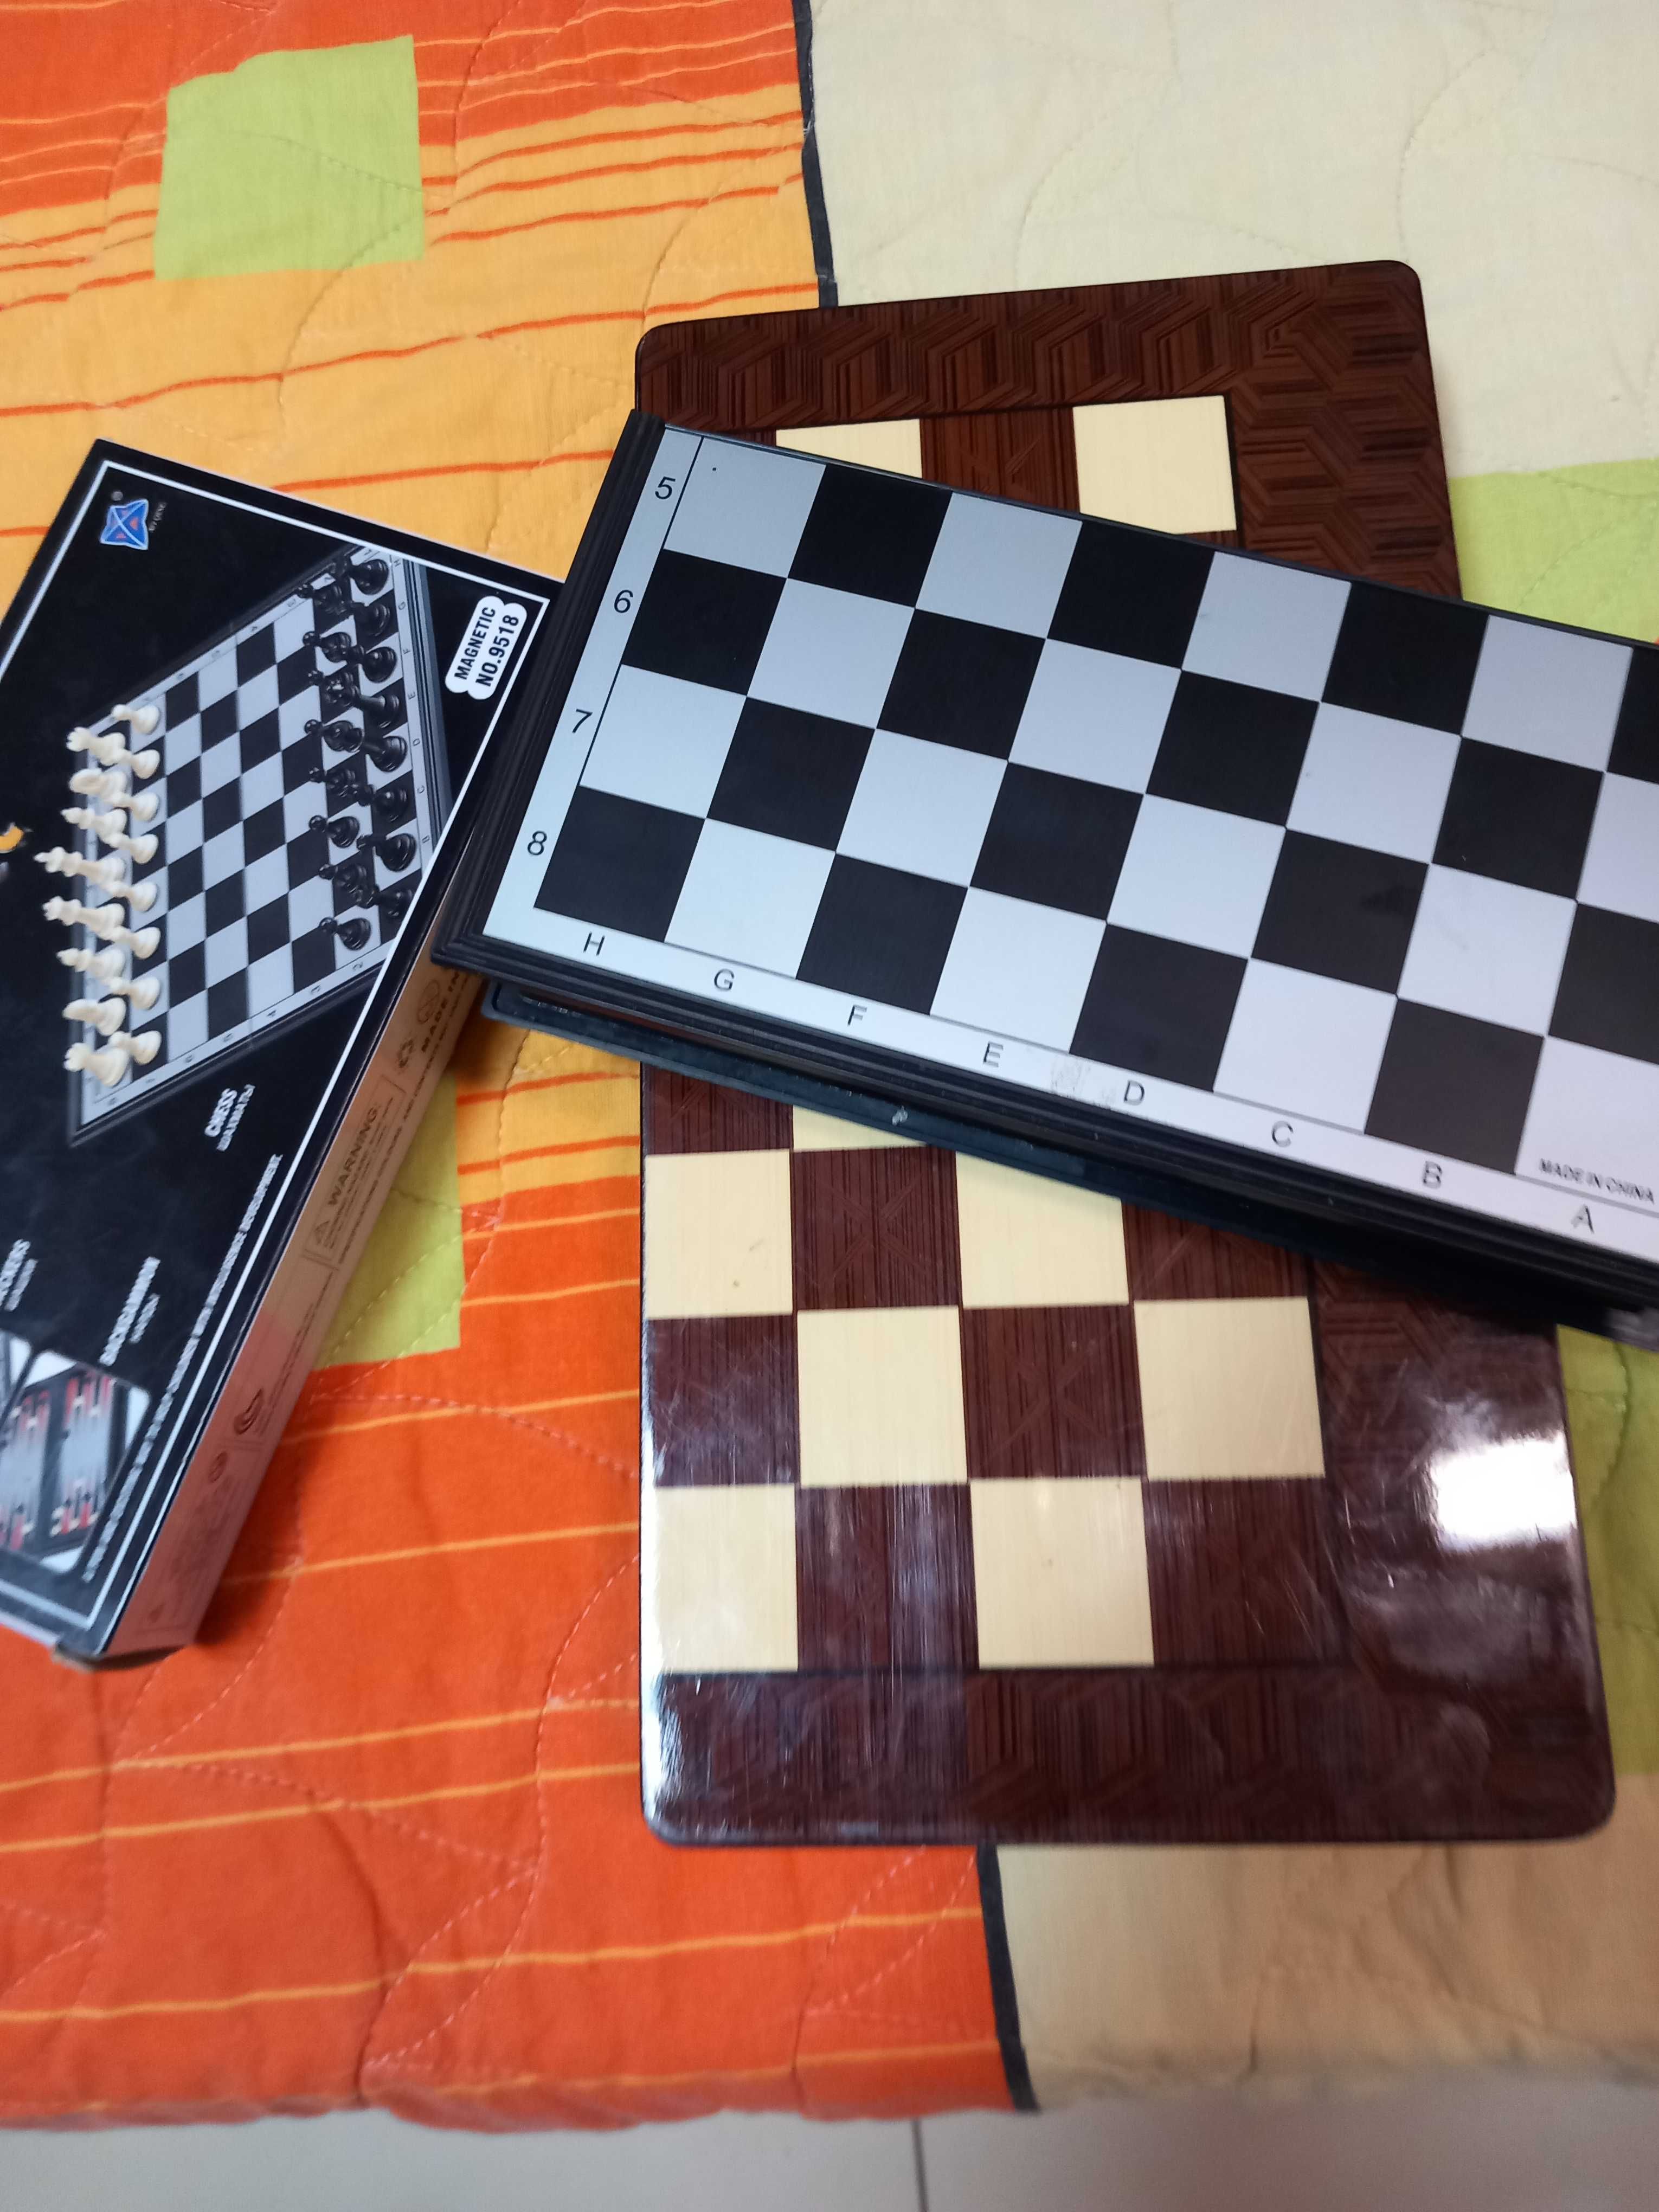 Продава се магнитен шах